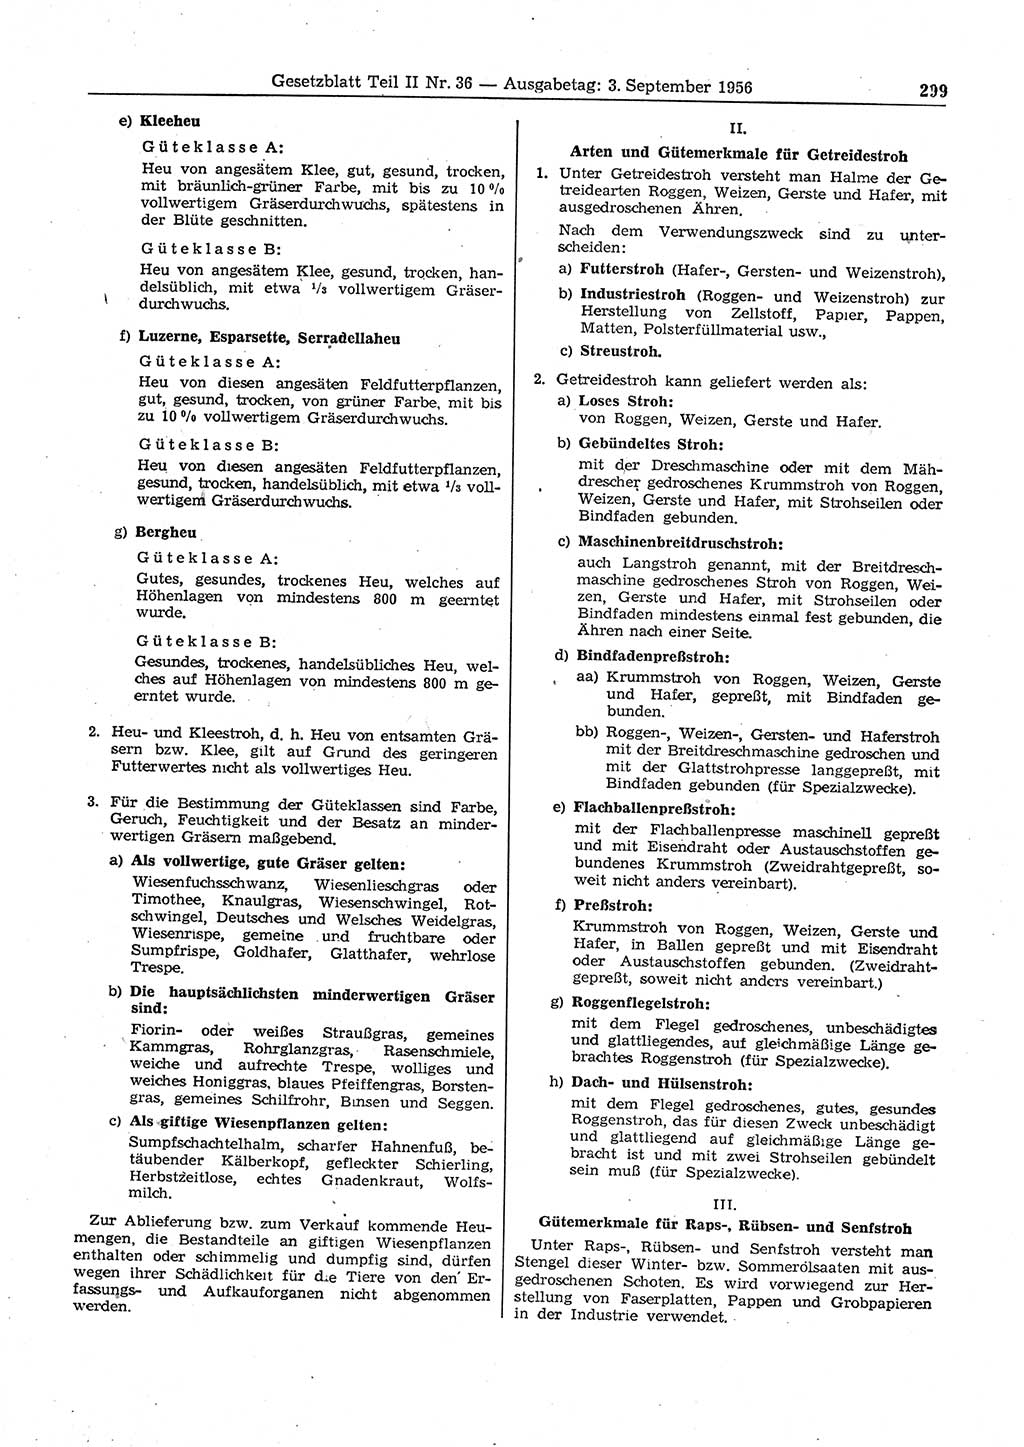 Gesetzblatt (GBl.) der Deutschen Demokratischen Republik (DDR) Teil ⅠⅠ 1956, Seite 299 (GBl. DDR ⅠⅠ 1956, S. 299)